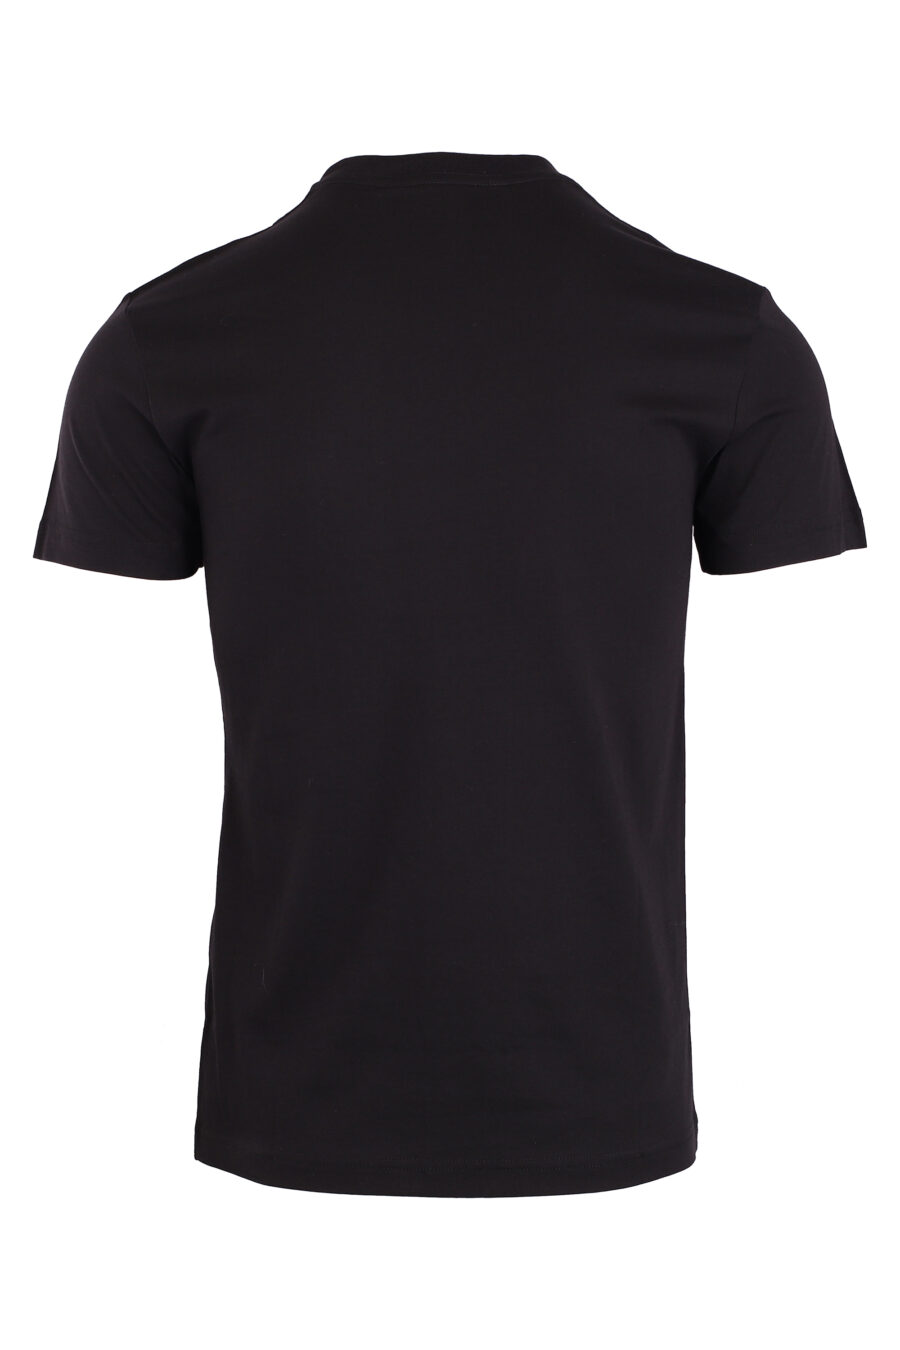 T-shirt noir avec logo circulaire gris - IMG 8945